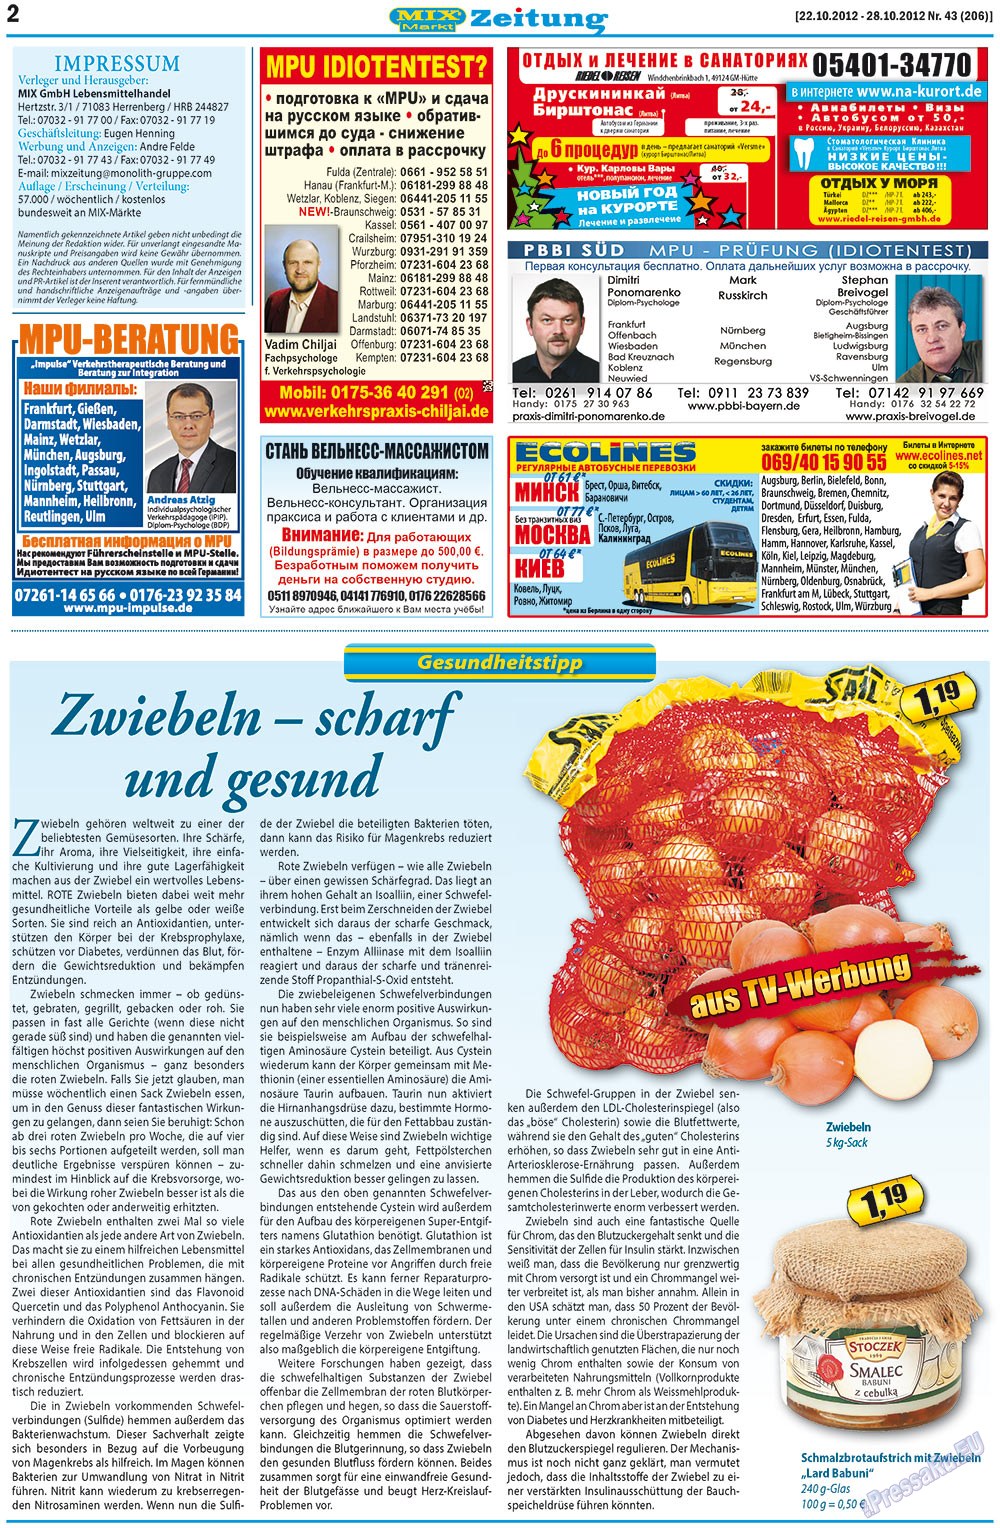 MIX-Markt Zeitung, газета. 2012 №43 стр.2